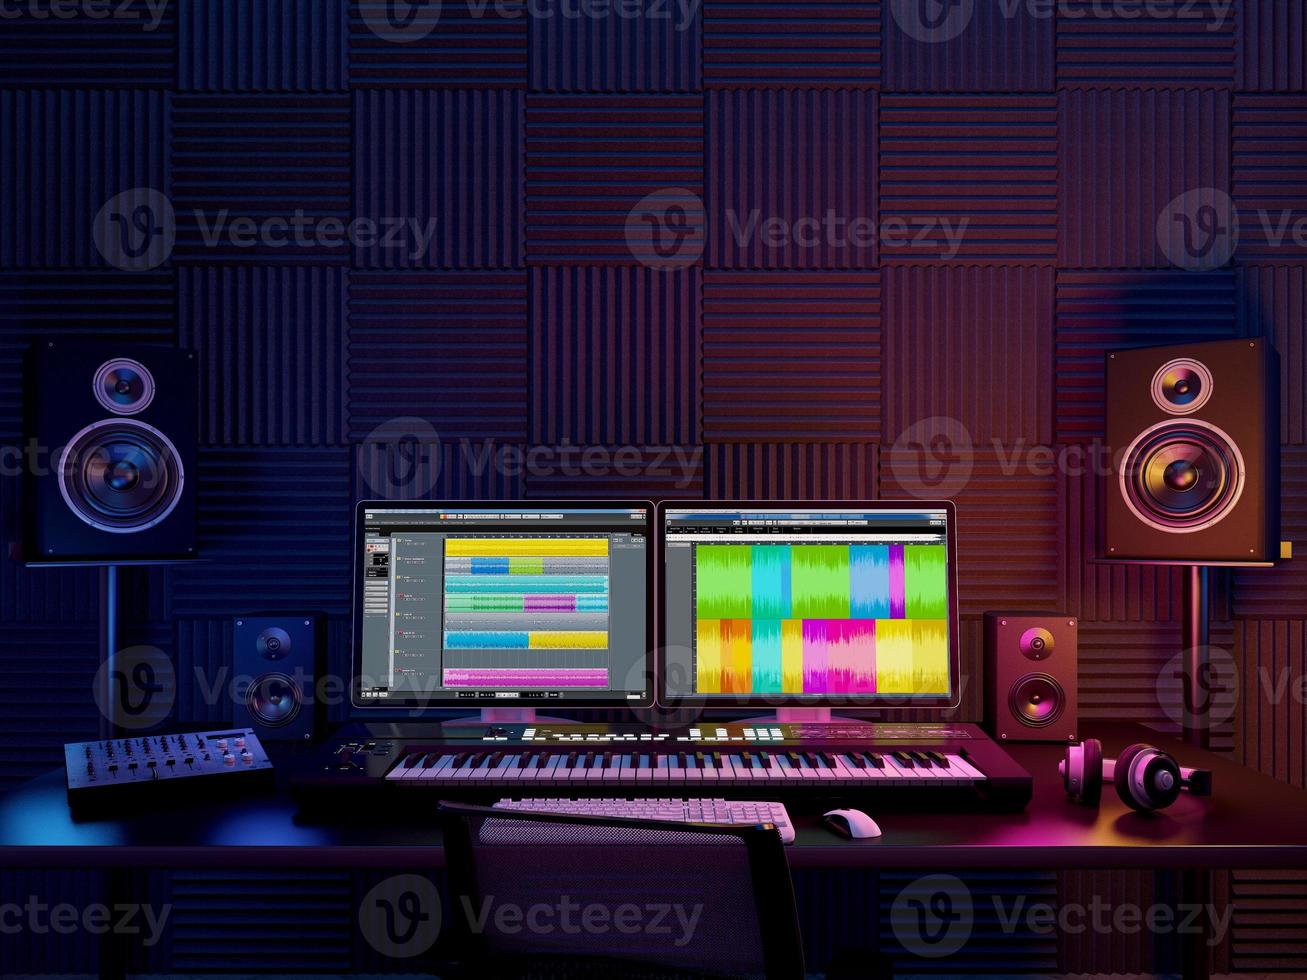 ljud arbetsplats, inspelningsstudio, dator musik studio.3D-rendering foto